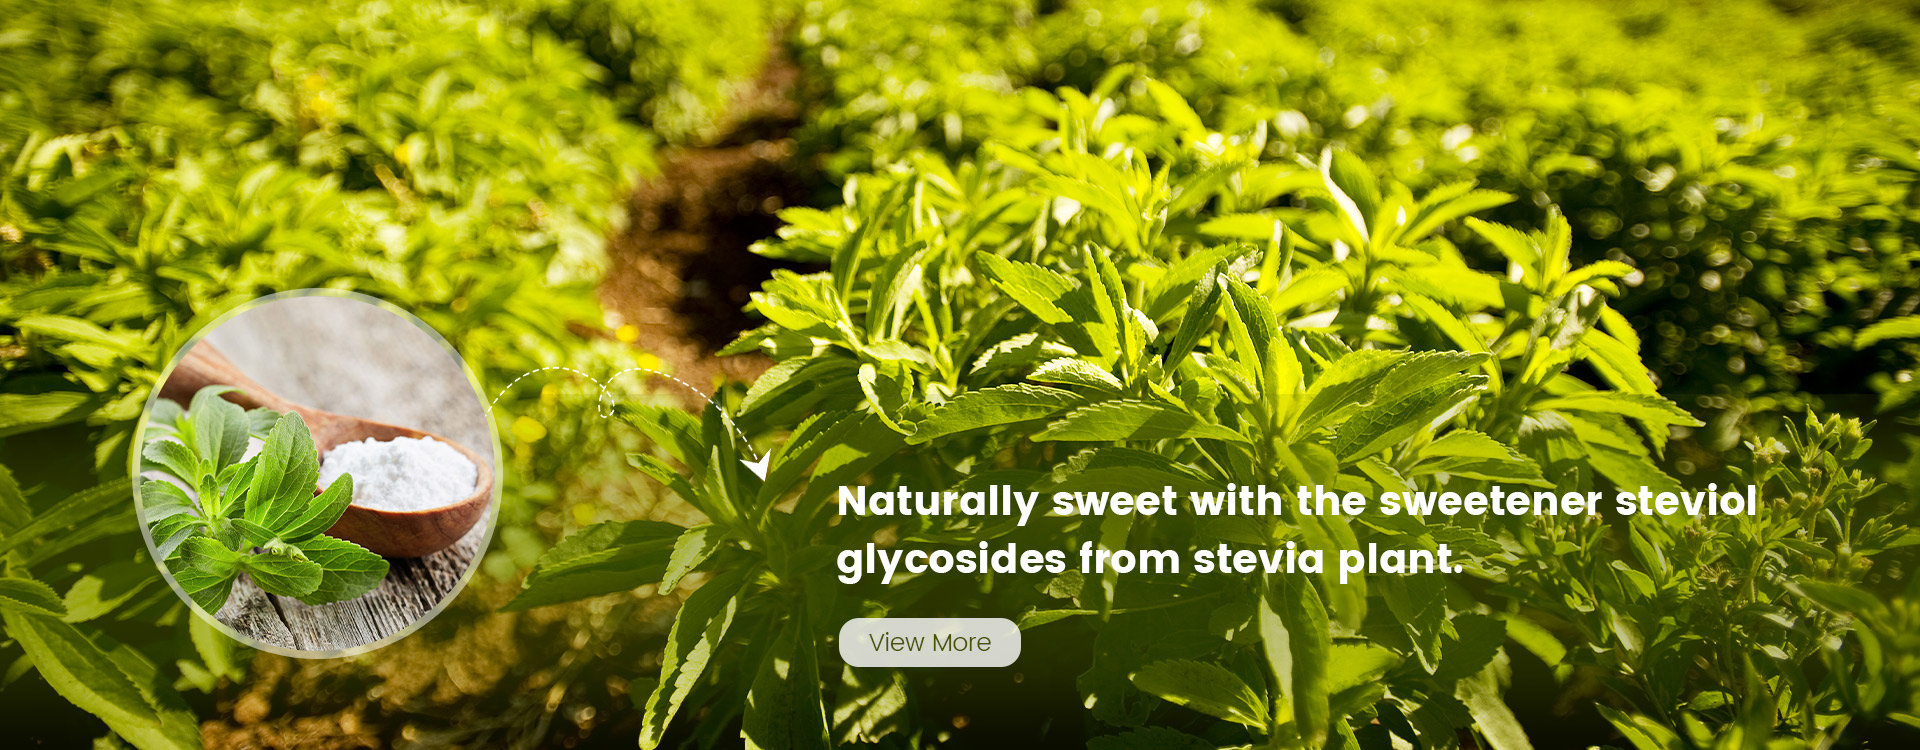 stevia sweetener for baking